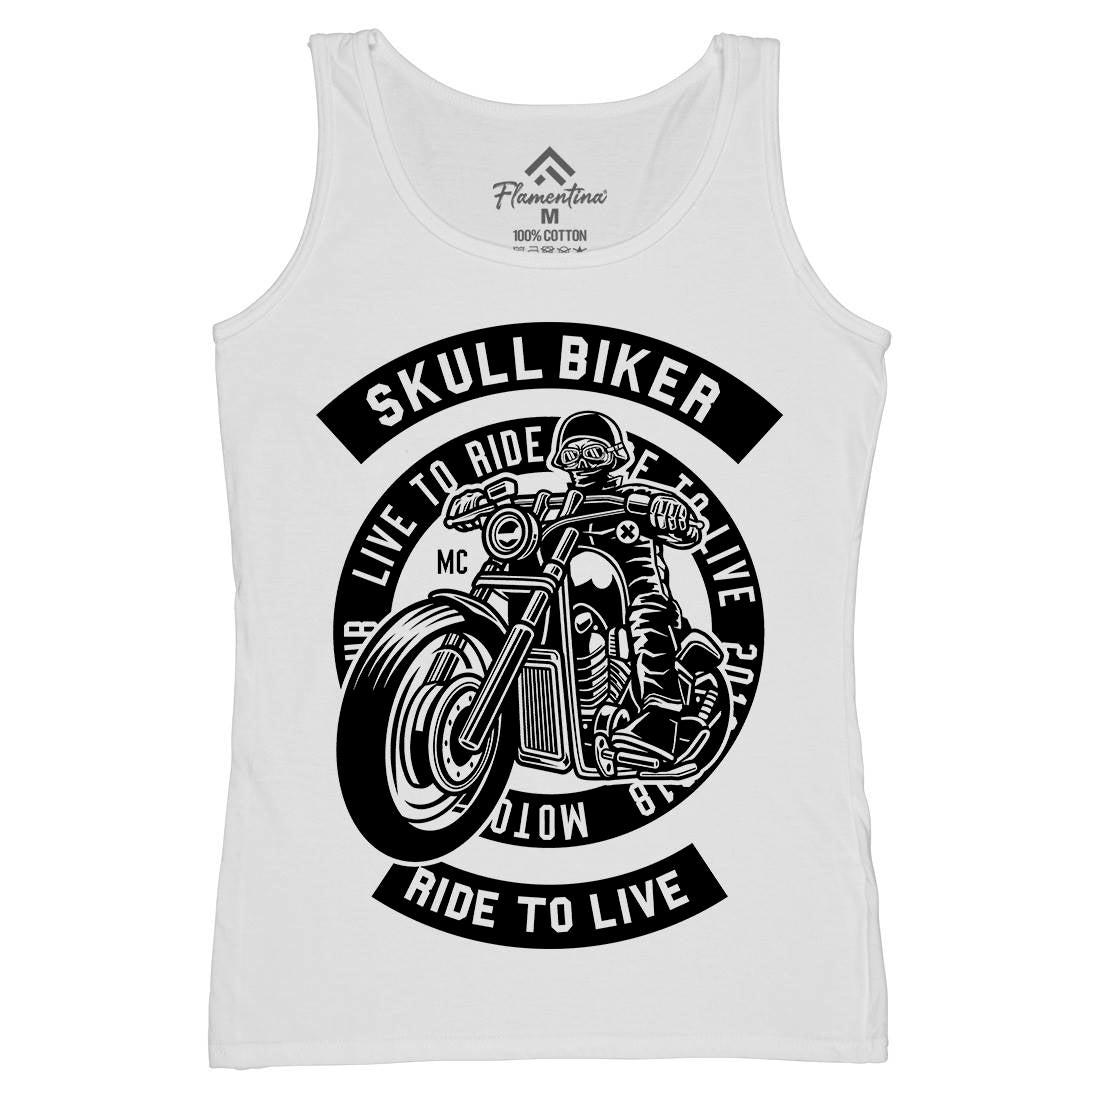 Skull Biker Womens Organic Tank Top Vest Bikes B626